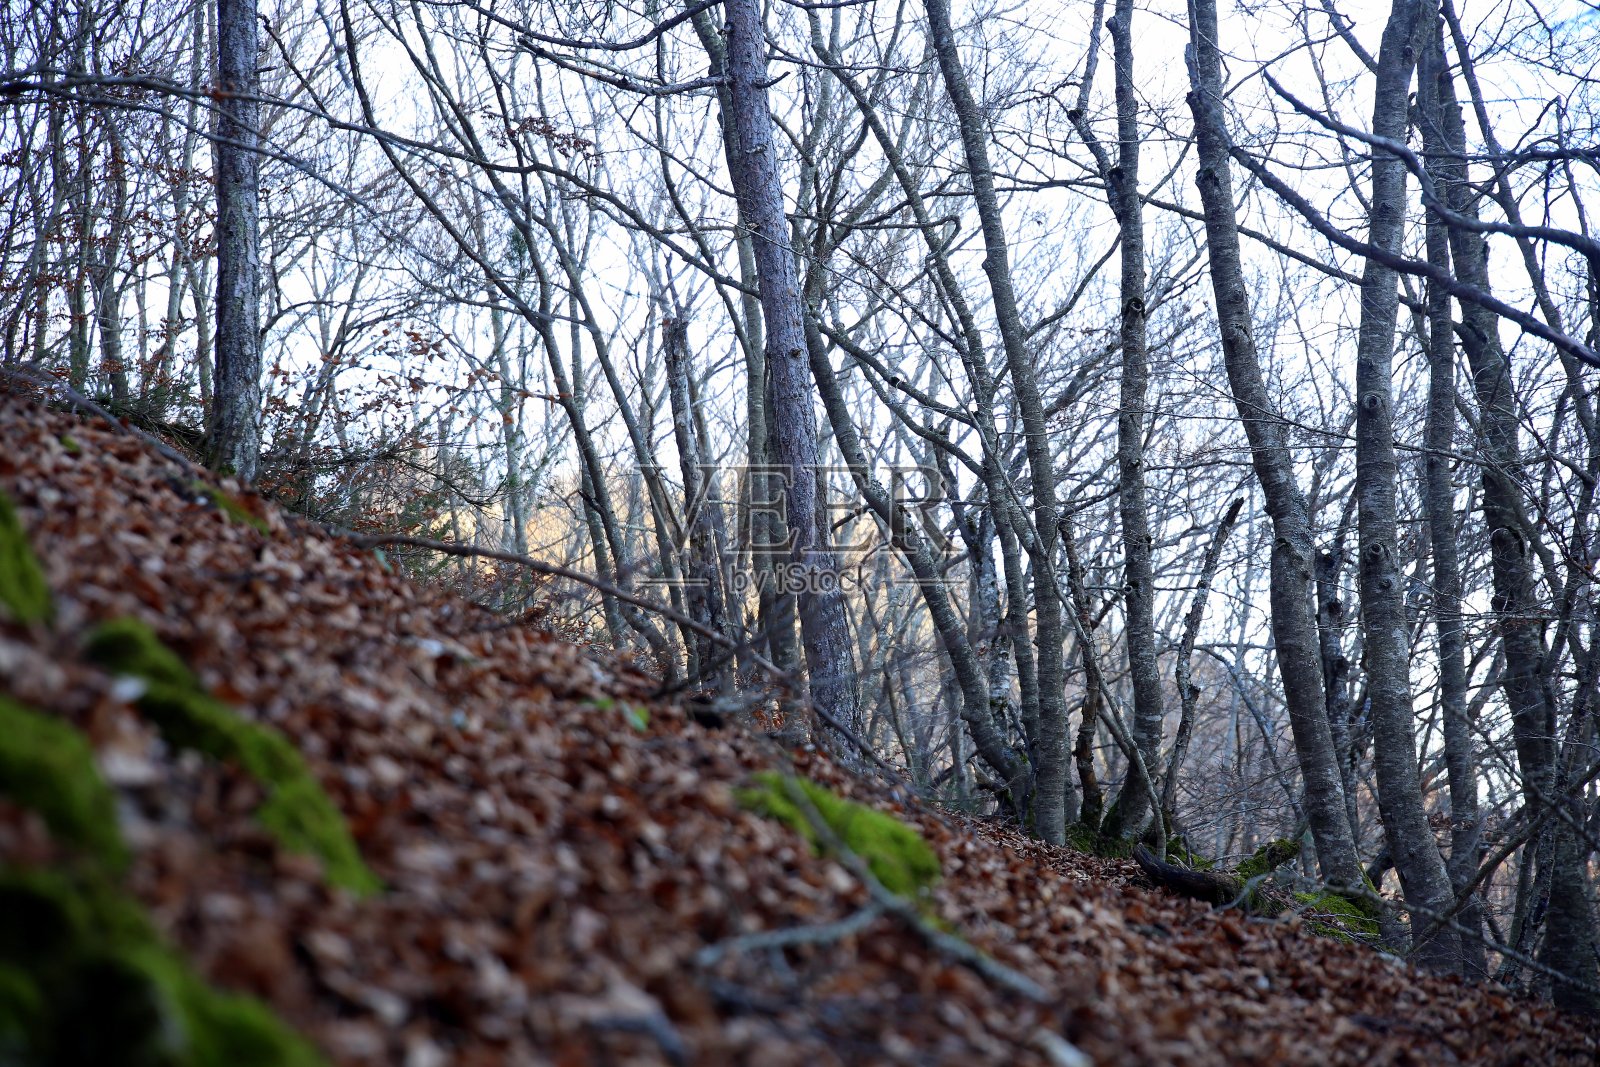 山毛榉树干具有陡峭的矮生照片摄影图片